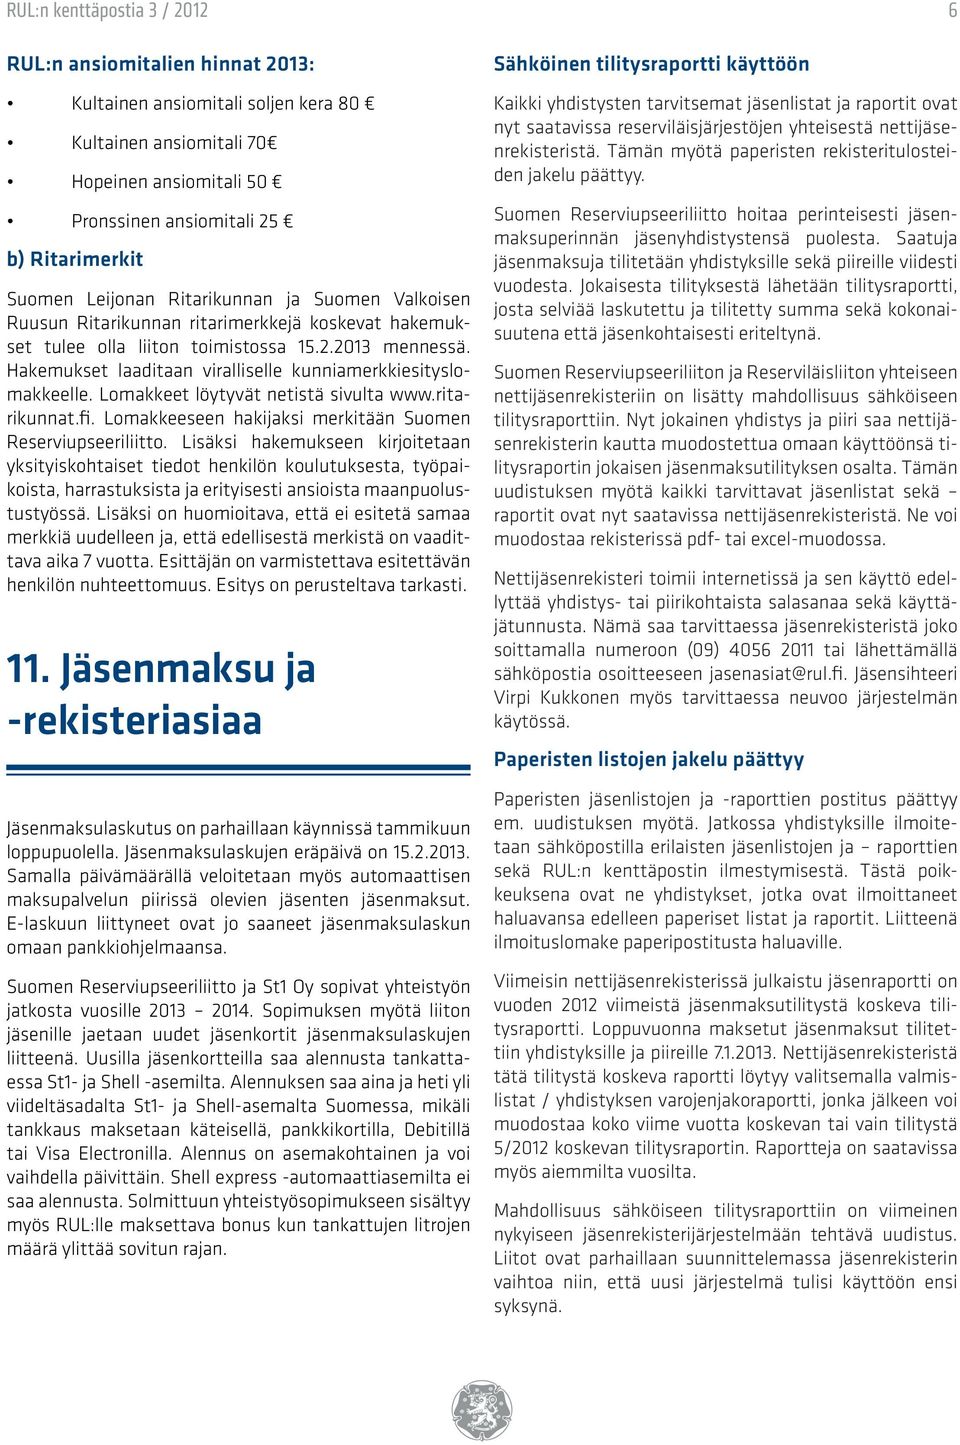 Lomakkeet löytyvät netistä sivulta www.ritarikunnat.fi. Lomakkeeseen hakijaksi merkitään Suomen Reserviupseeriliitto.